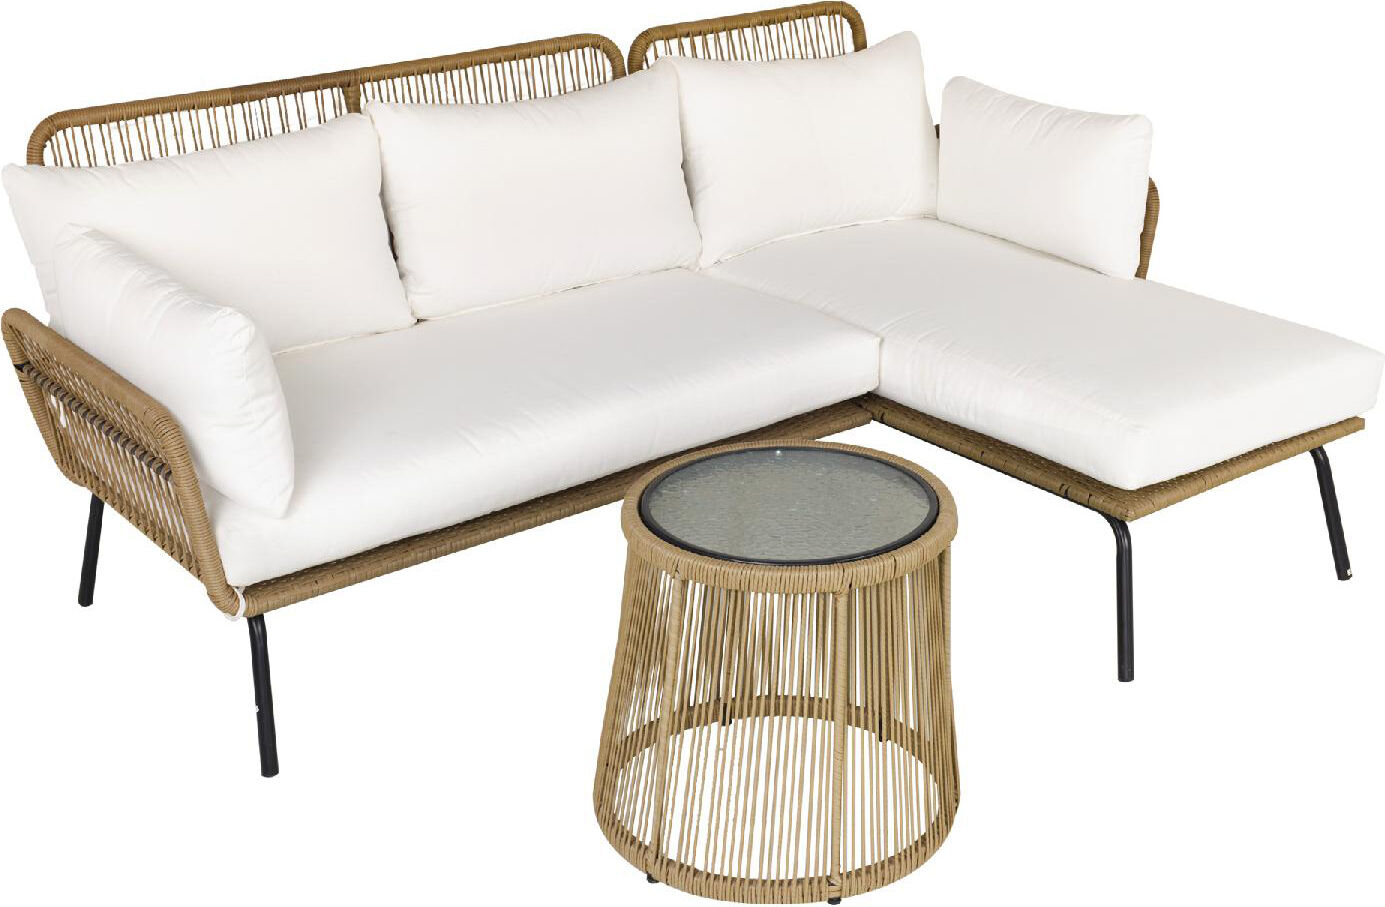 vivagarden d65134 salotto da giardino set da esterno 3 pezzi effetto rattan con divano 2 posti chaise longue e tavolino colore beige / caffè - d65134